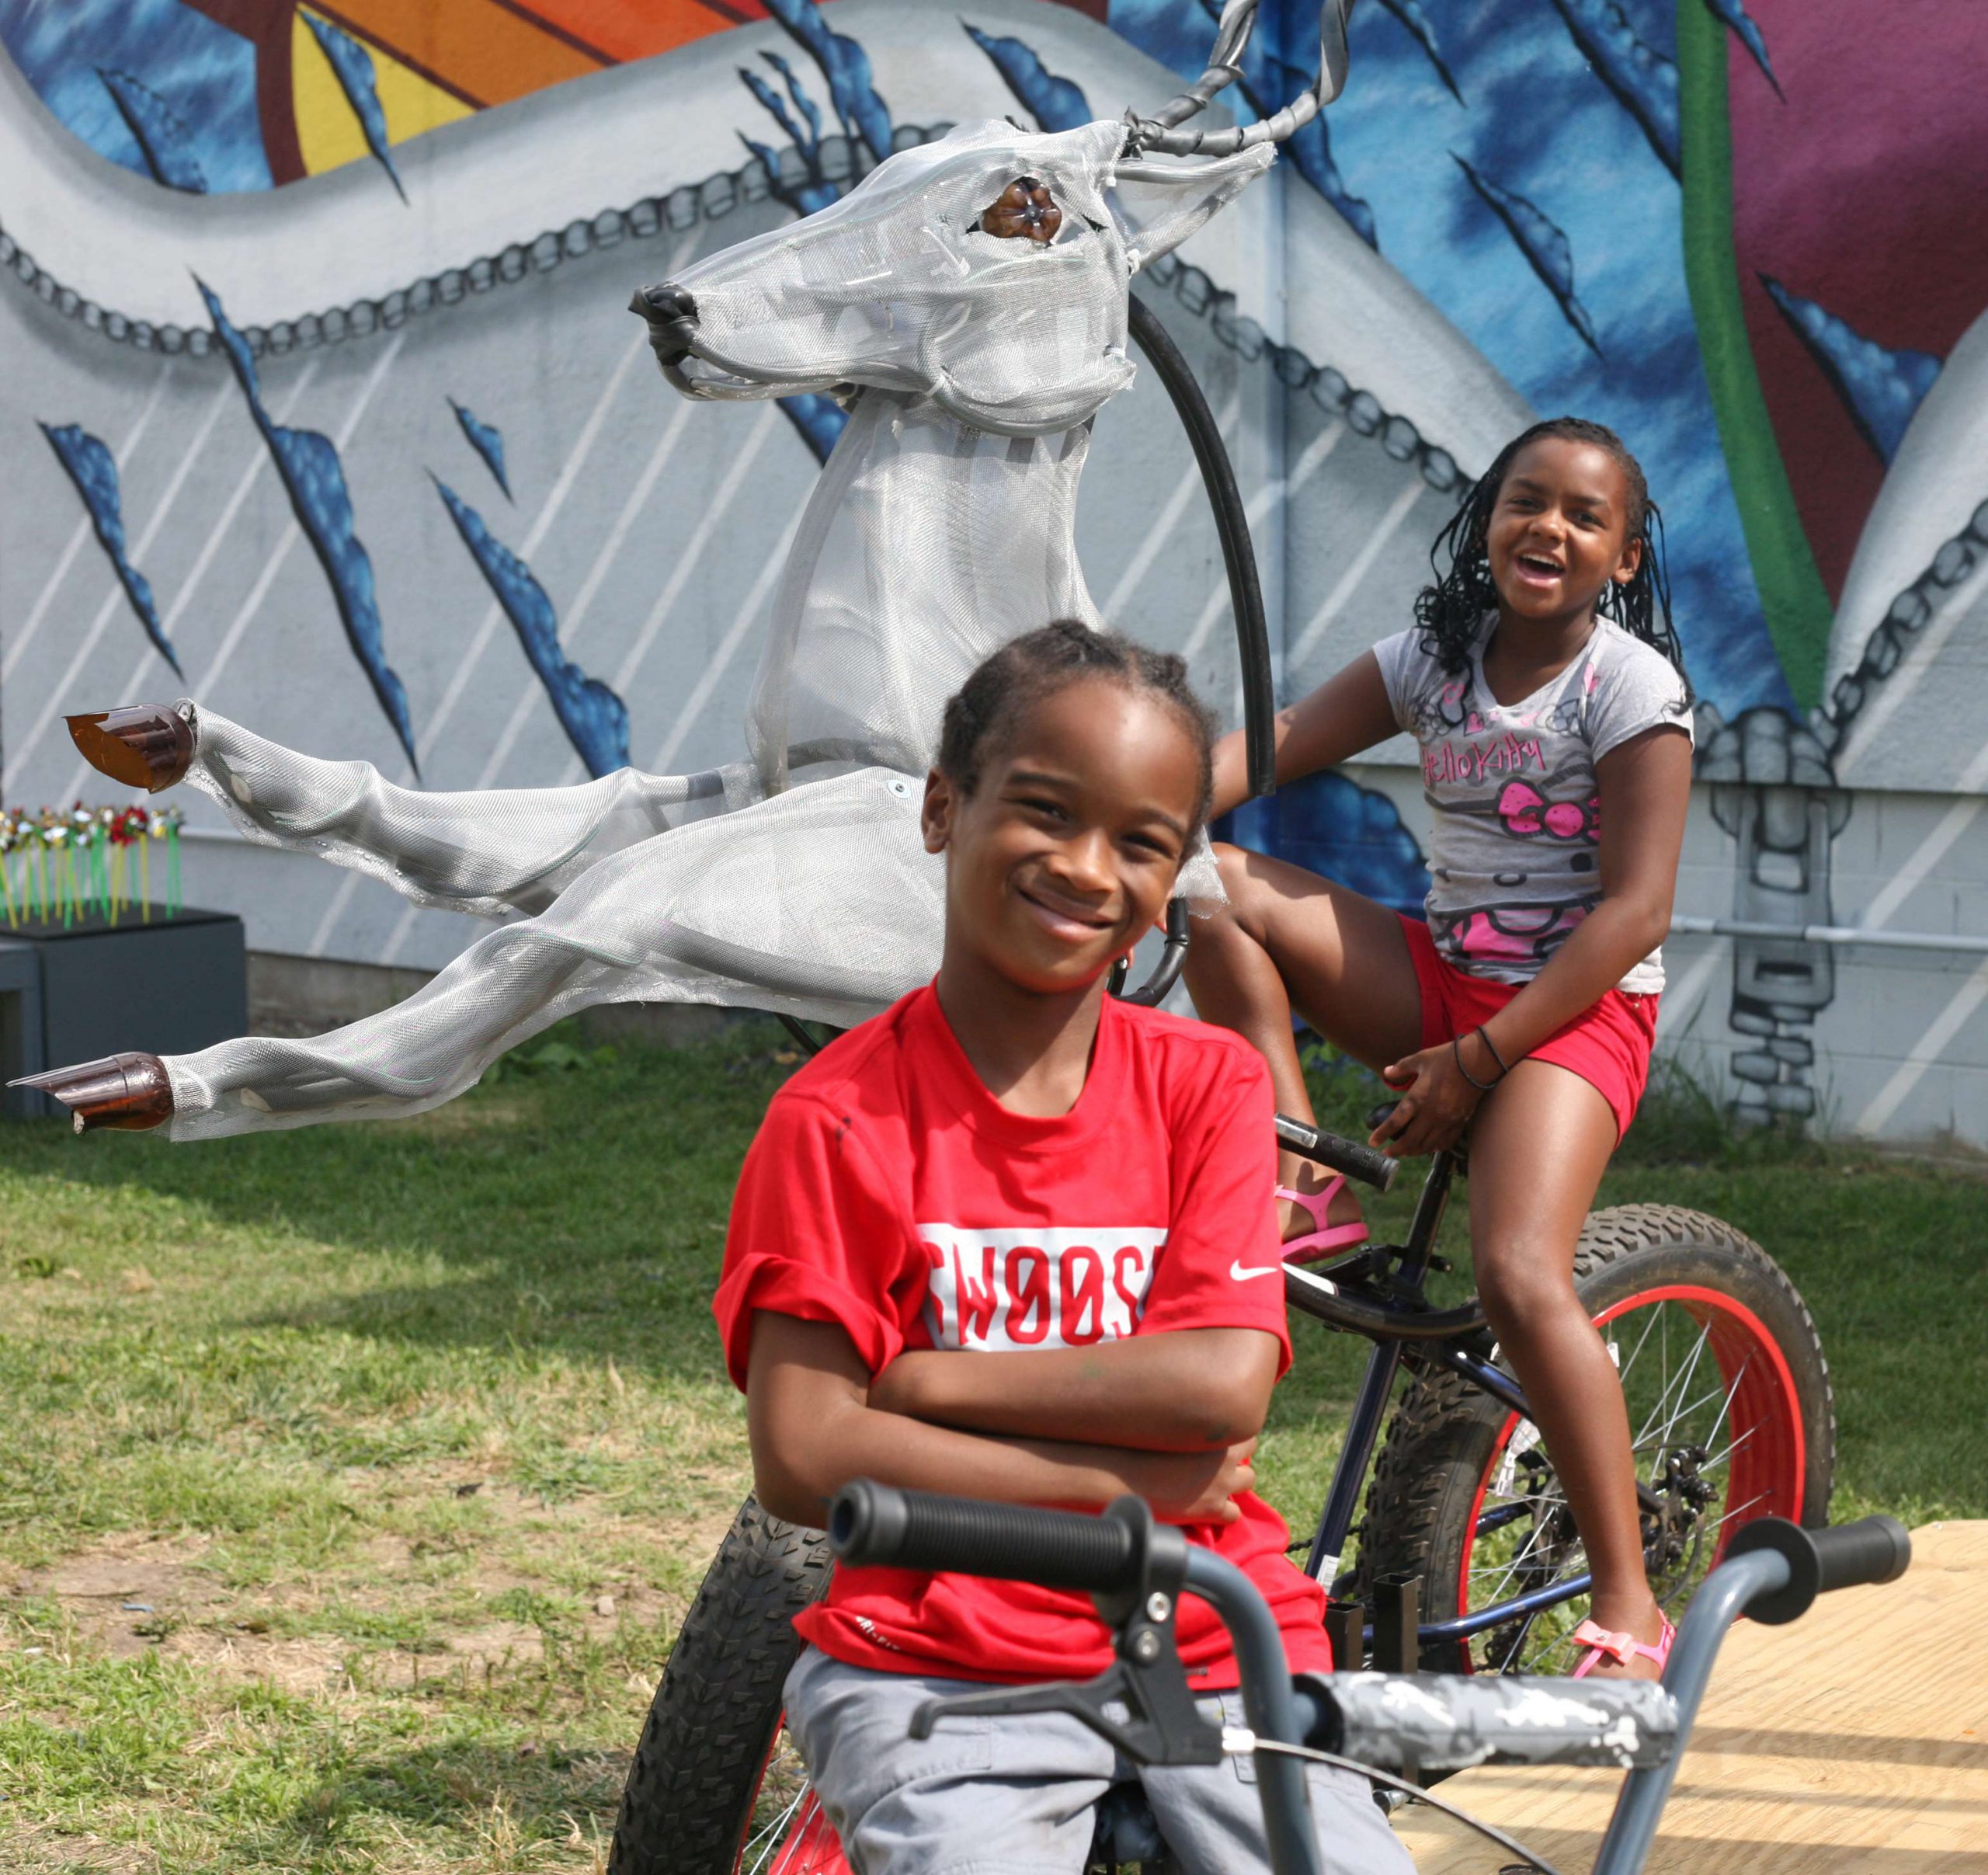 Two kids sit on a bike carousel